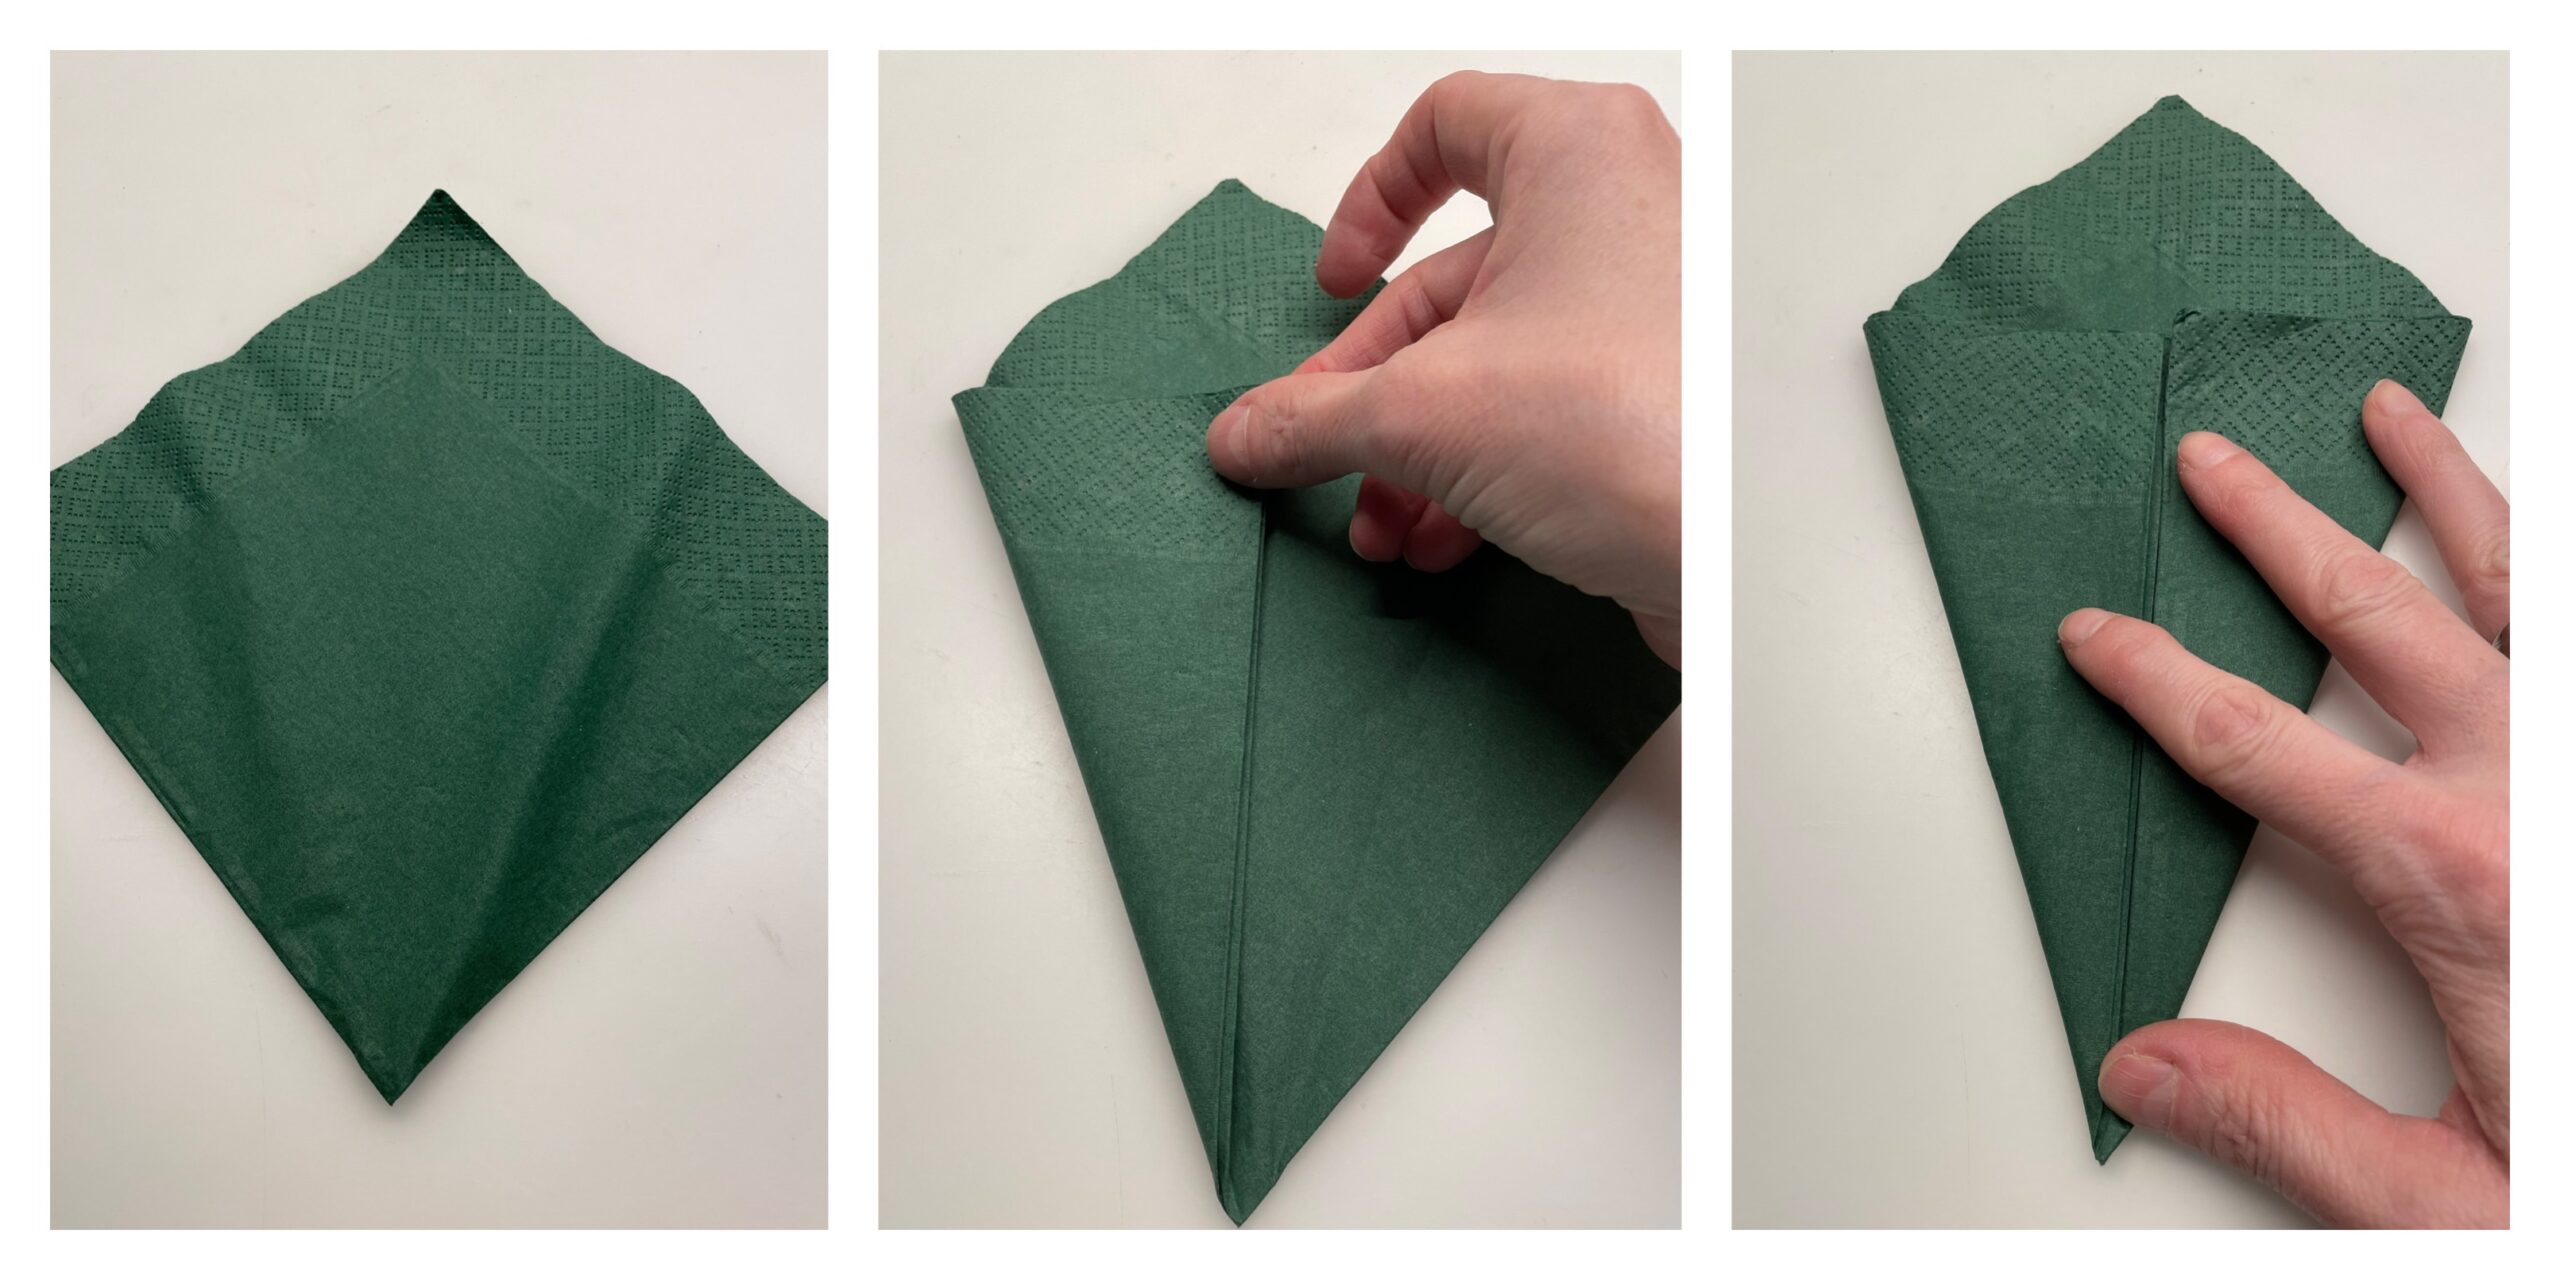 Bild zum Schritt 4 für die Kinder-Beschäftigung: 'Jetzt faltet ihr eine dunkelgrüne Serviette zur Hälfte.Dann faltet ihr...'